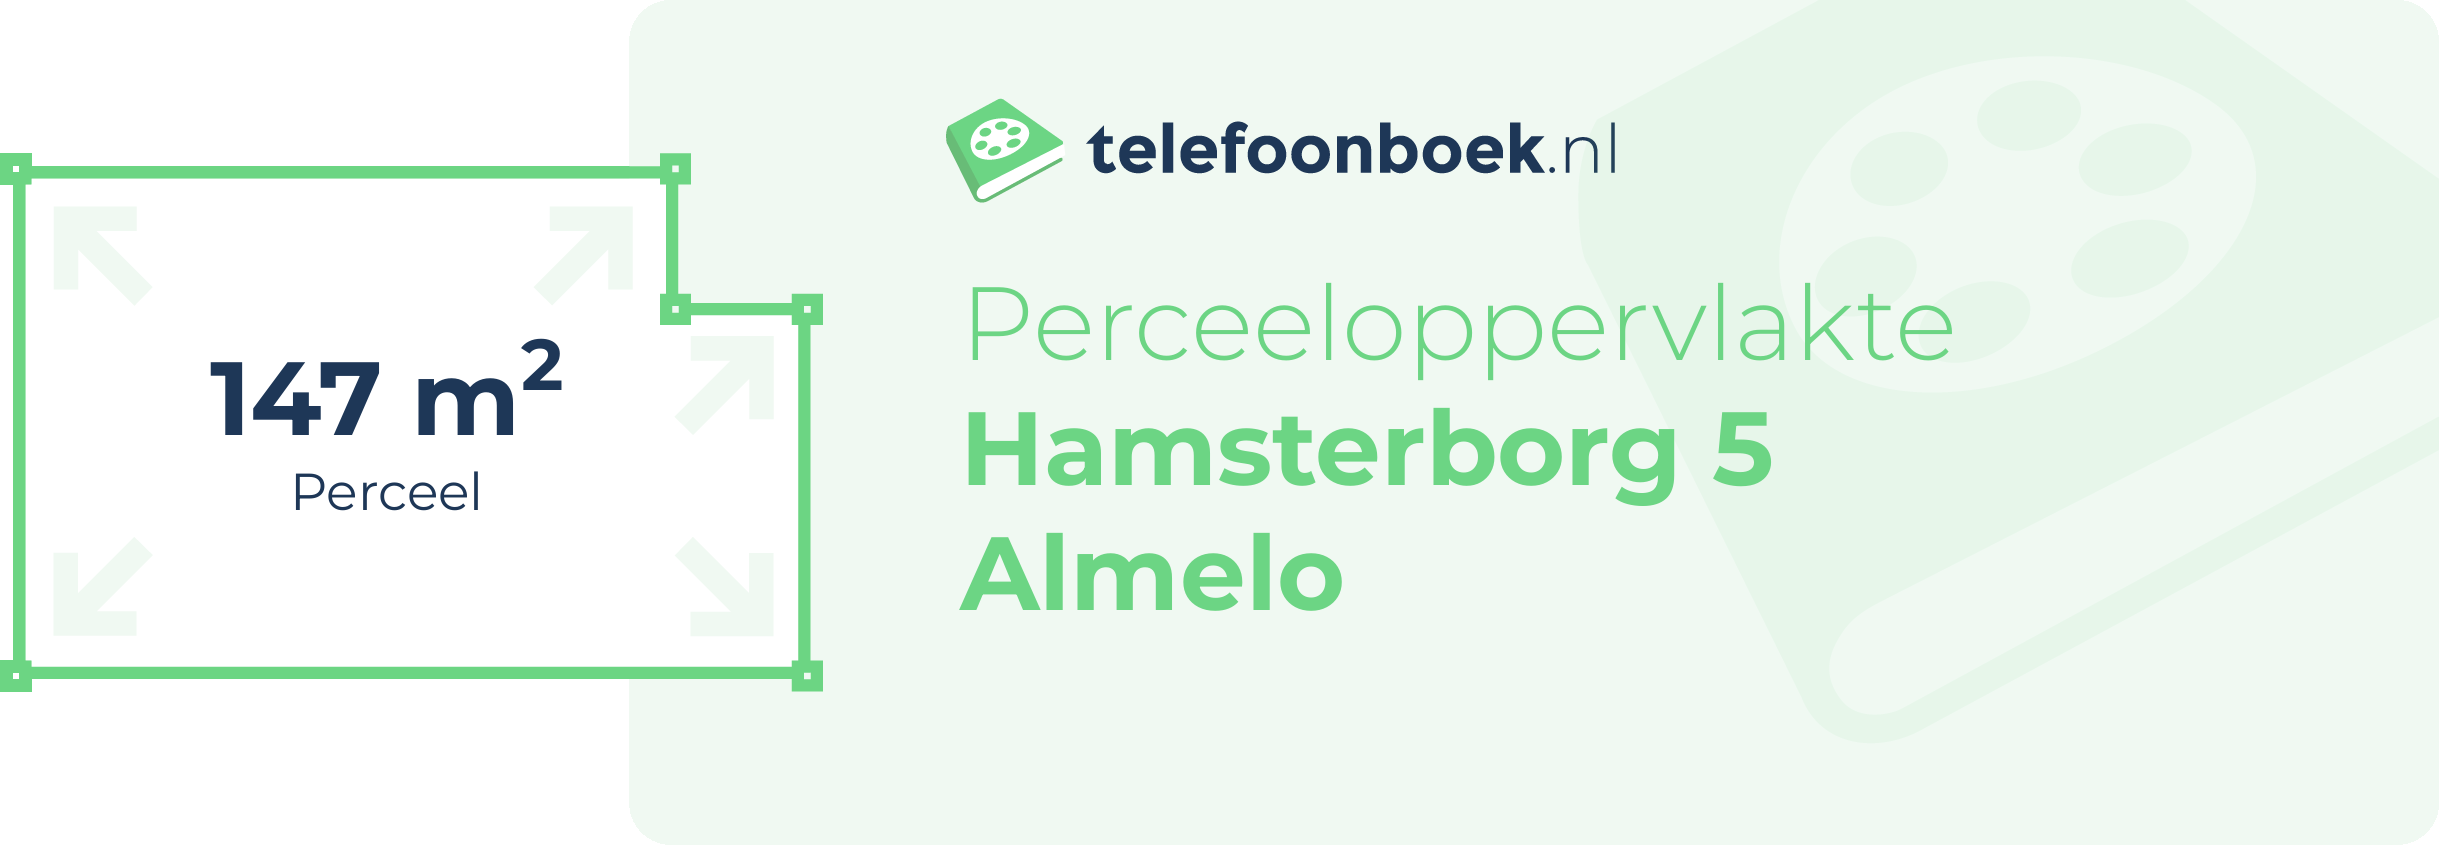 Perceeloppervlakte Hamsterborg 5 Almelo